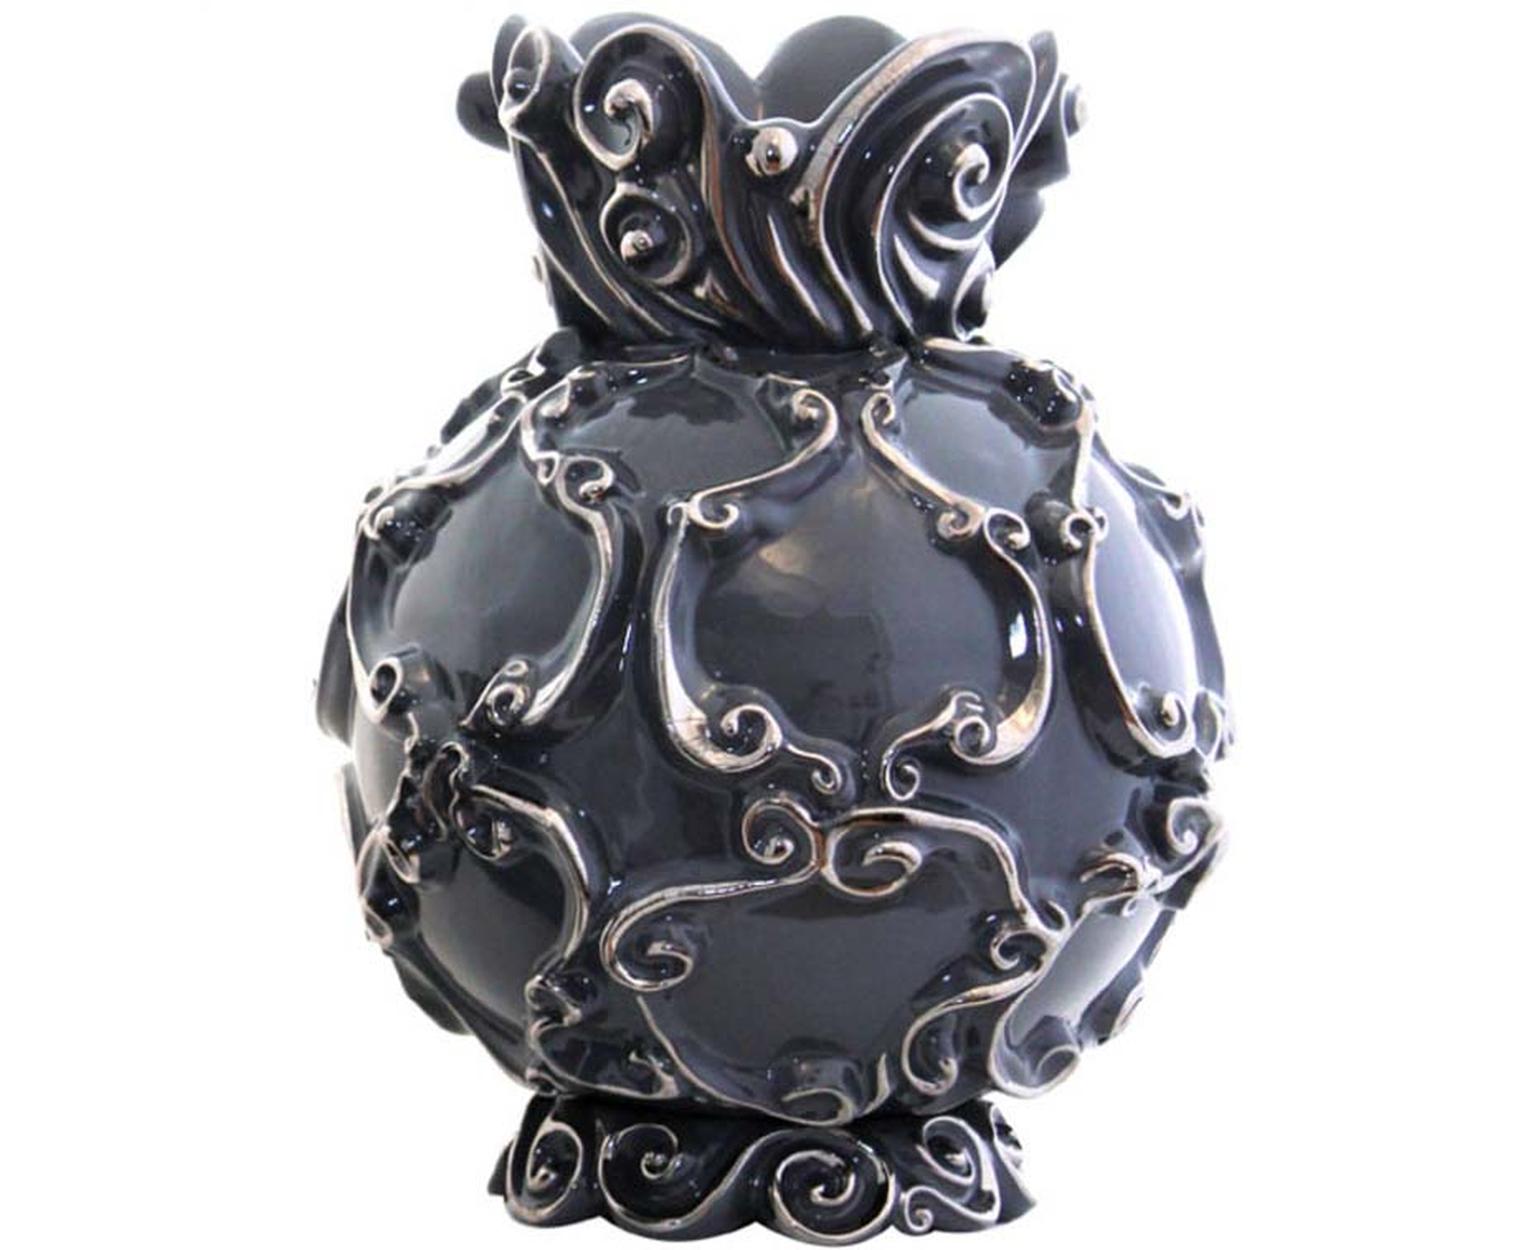 Jean Boggio grey earthenware Waves vase with platinum accents.